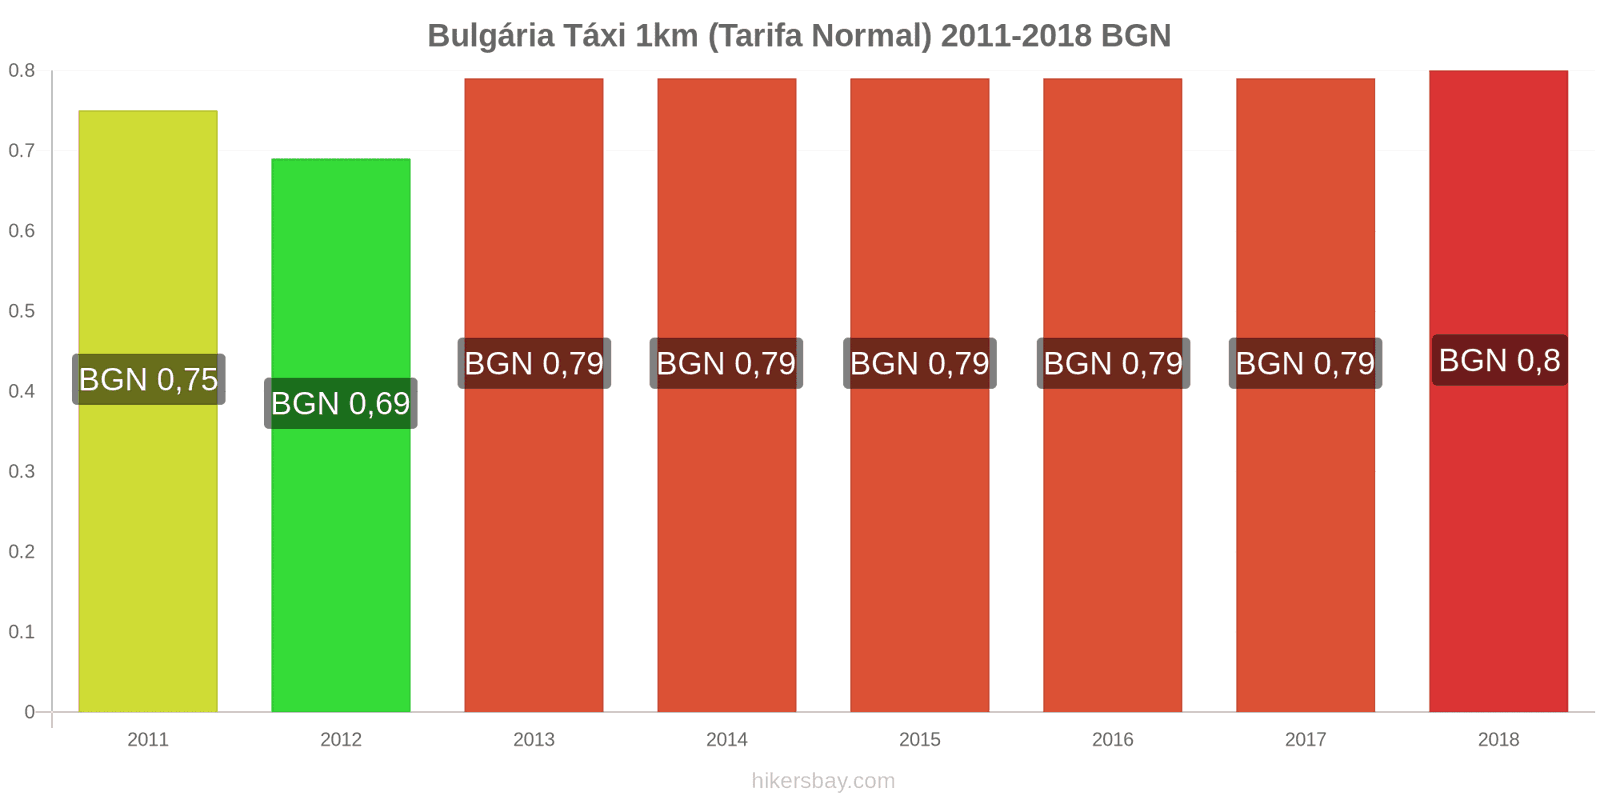 Bulgária mudanças de preços Táxi 1km (Tarifa Normal) hikersbay.com